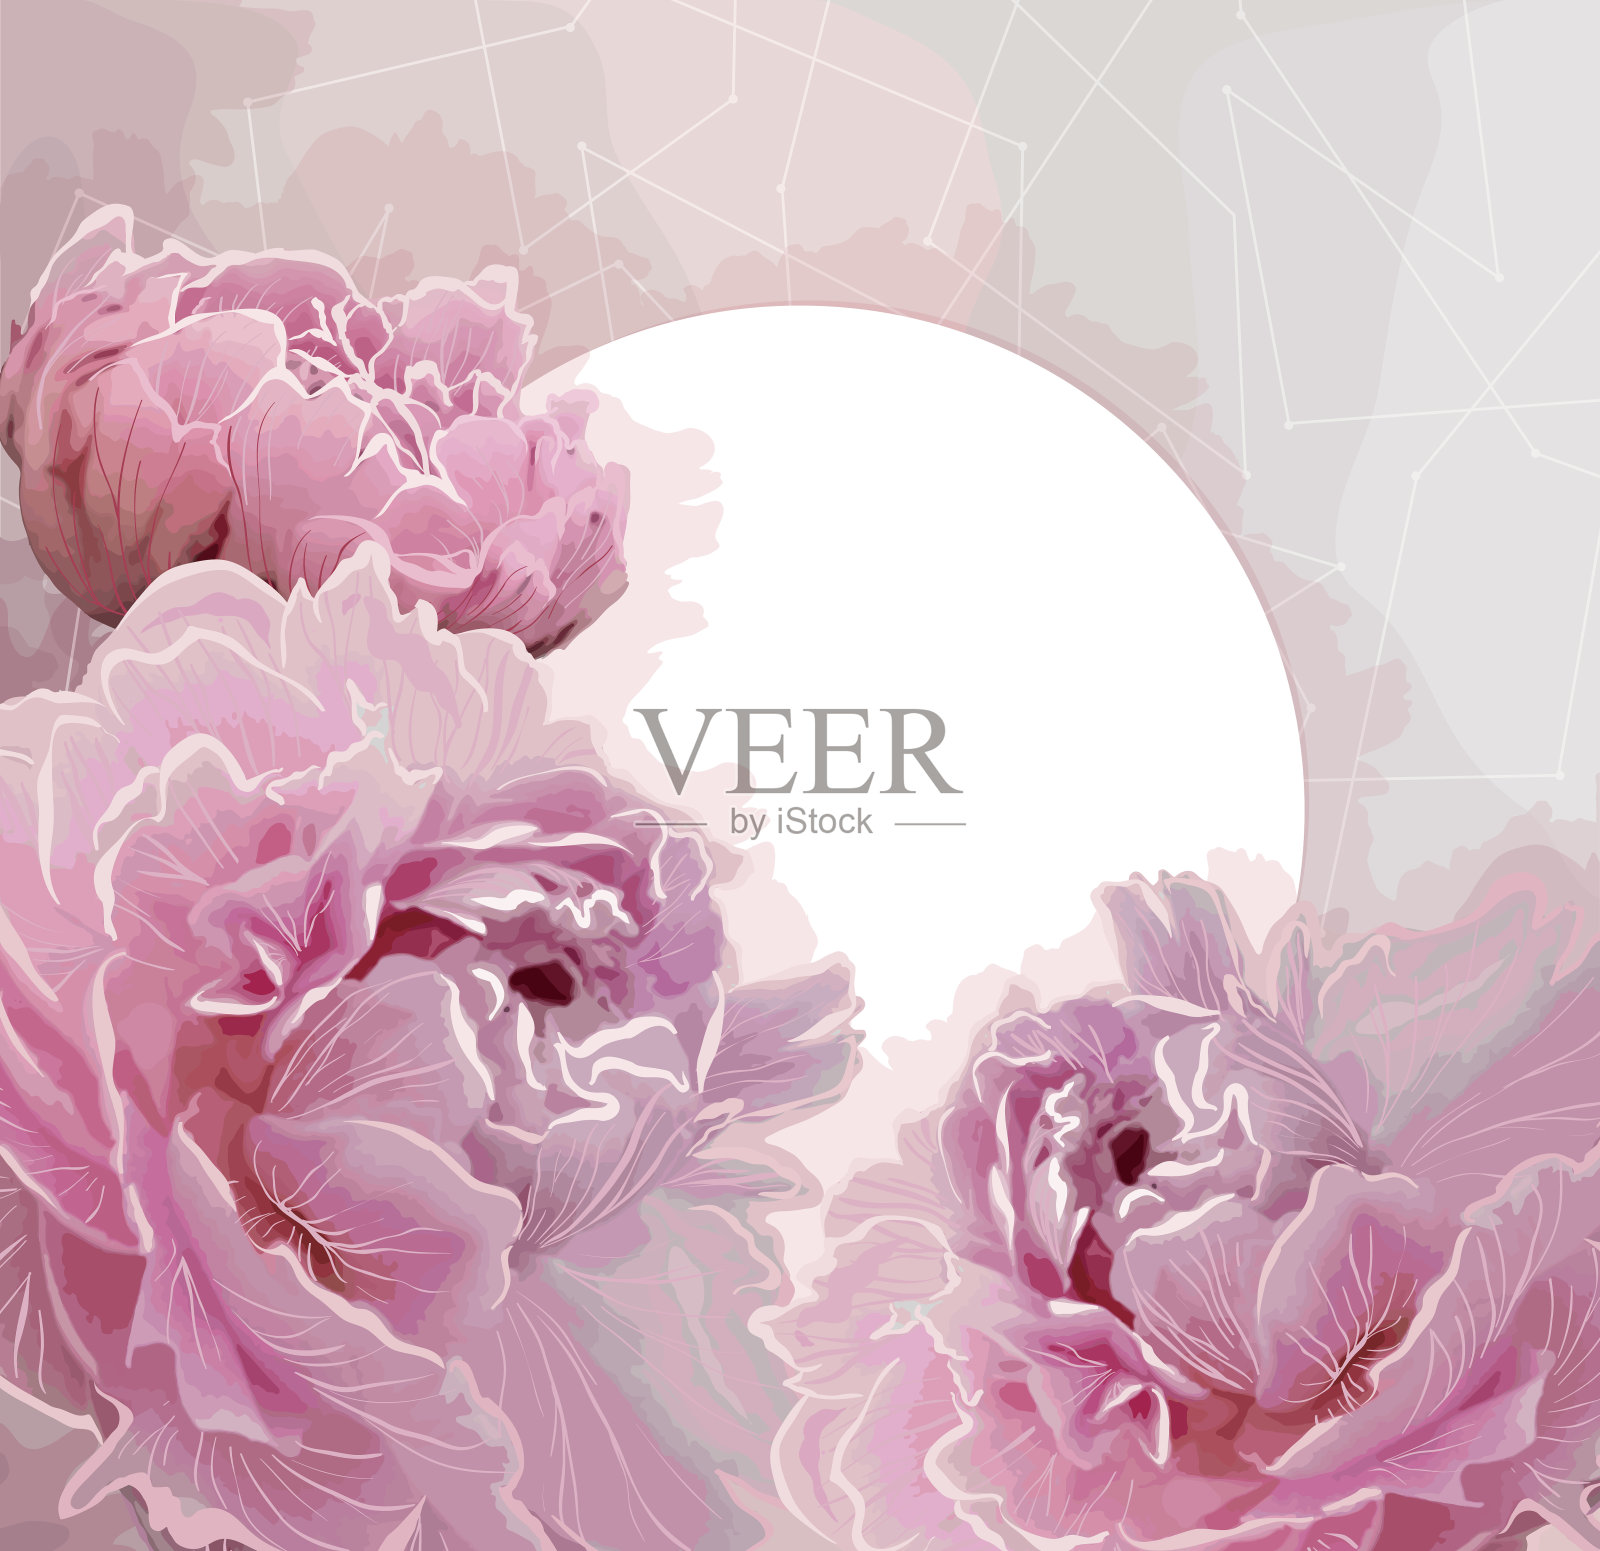 粉红色牡丹花背景与圆形标签插画图片素材